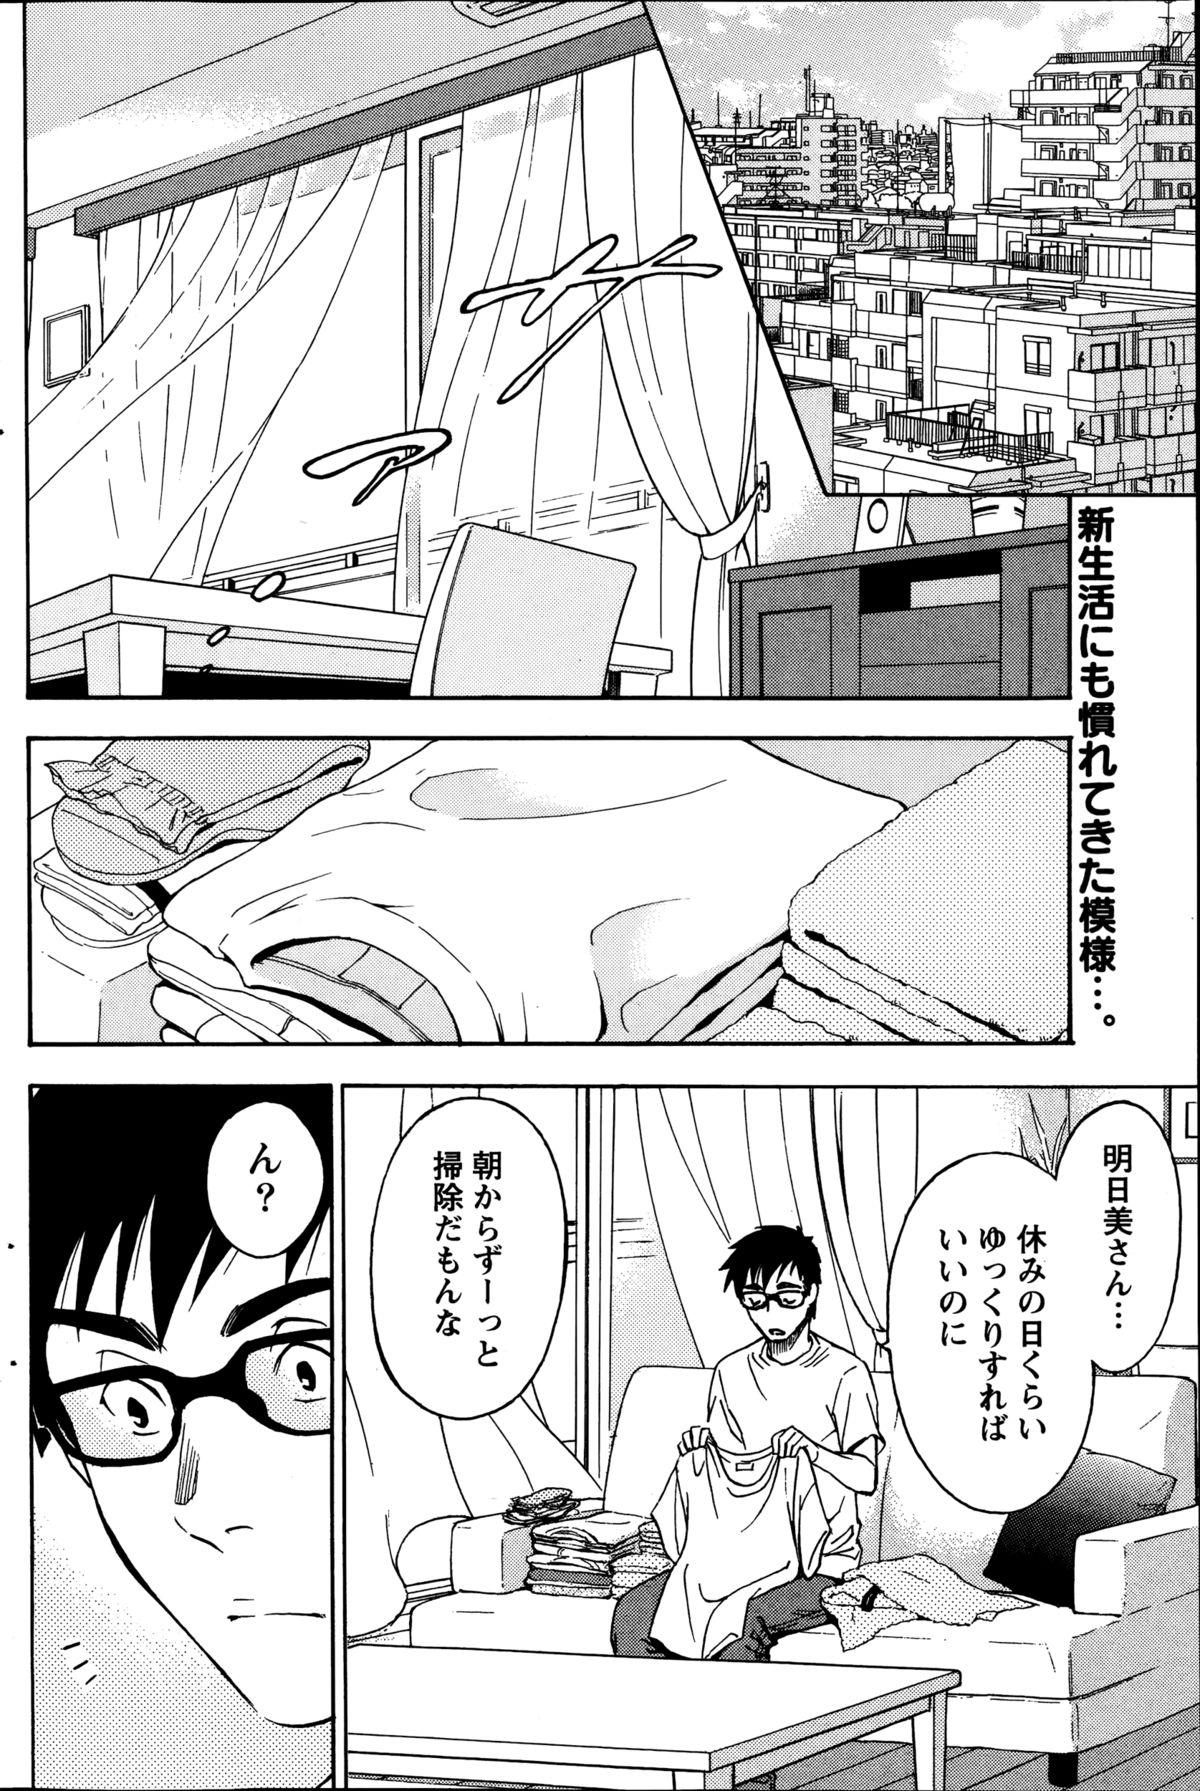 [Sawada Furope] Nise kon! - Spectacular Happy Sham Marriage! Ch.1-6 64